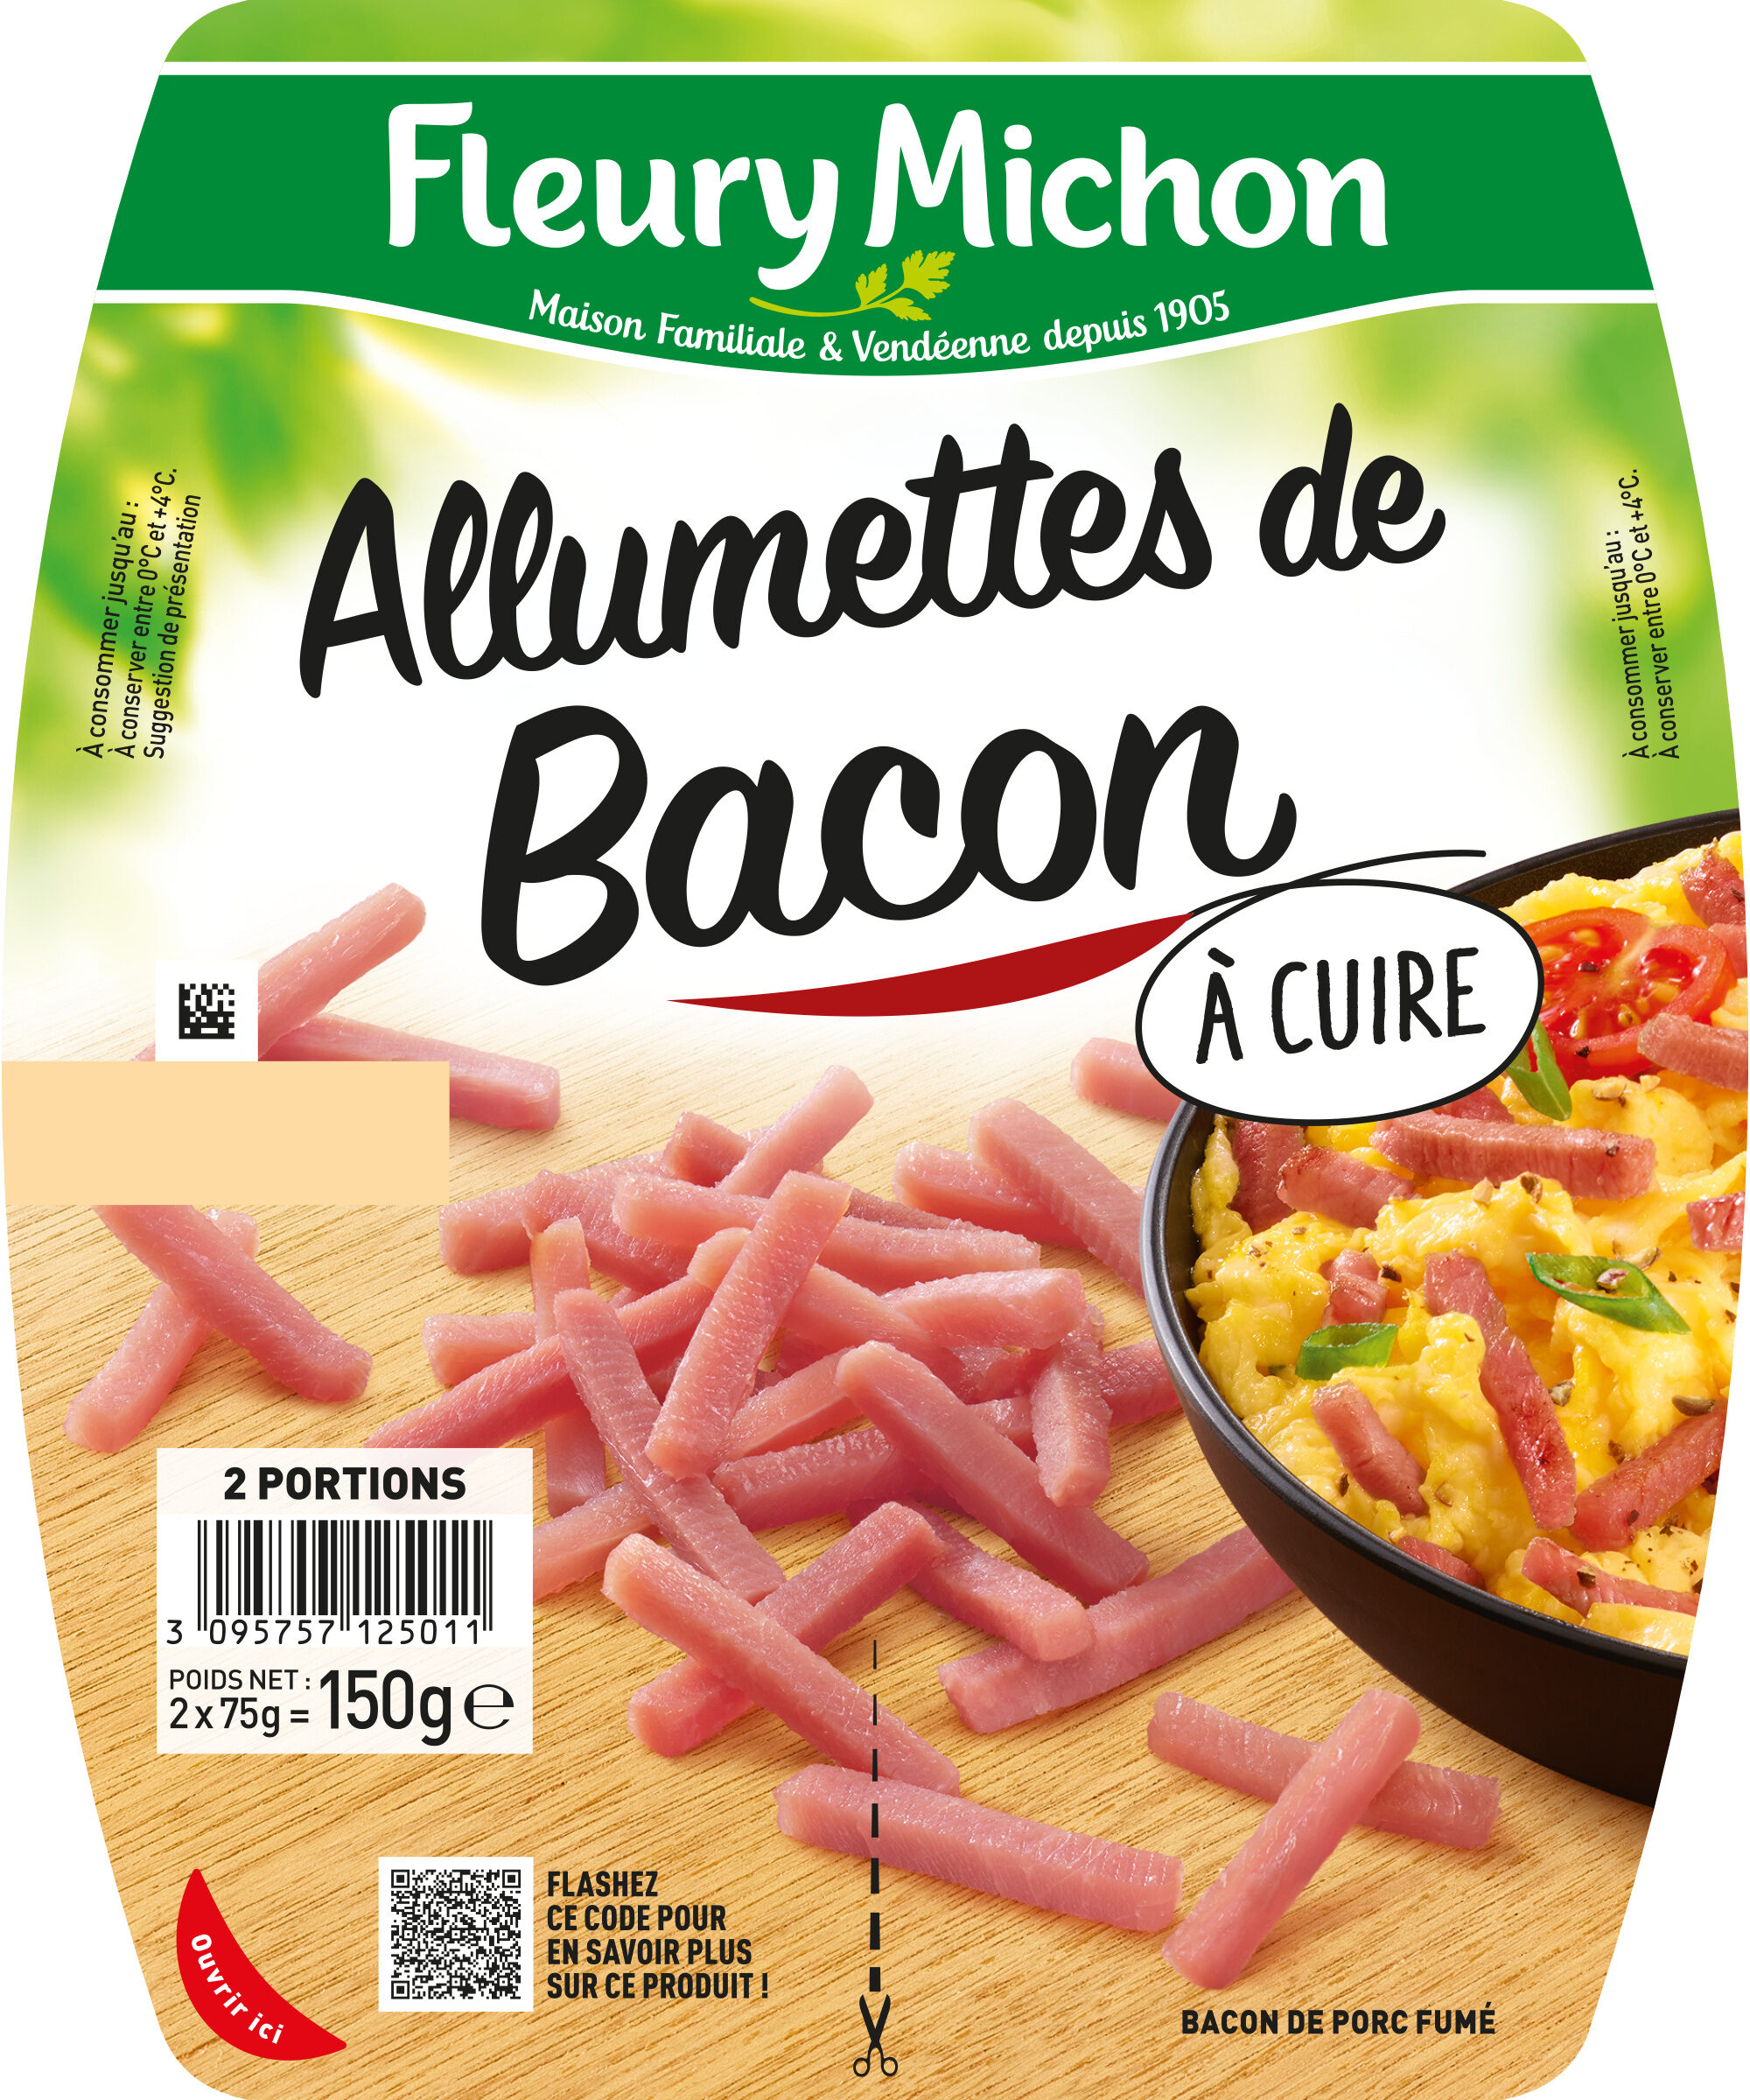 Allumettes de Bacon - Fumées - Product - fr